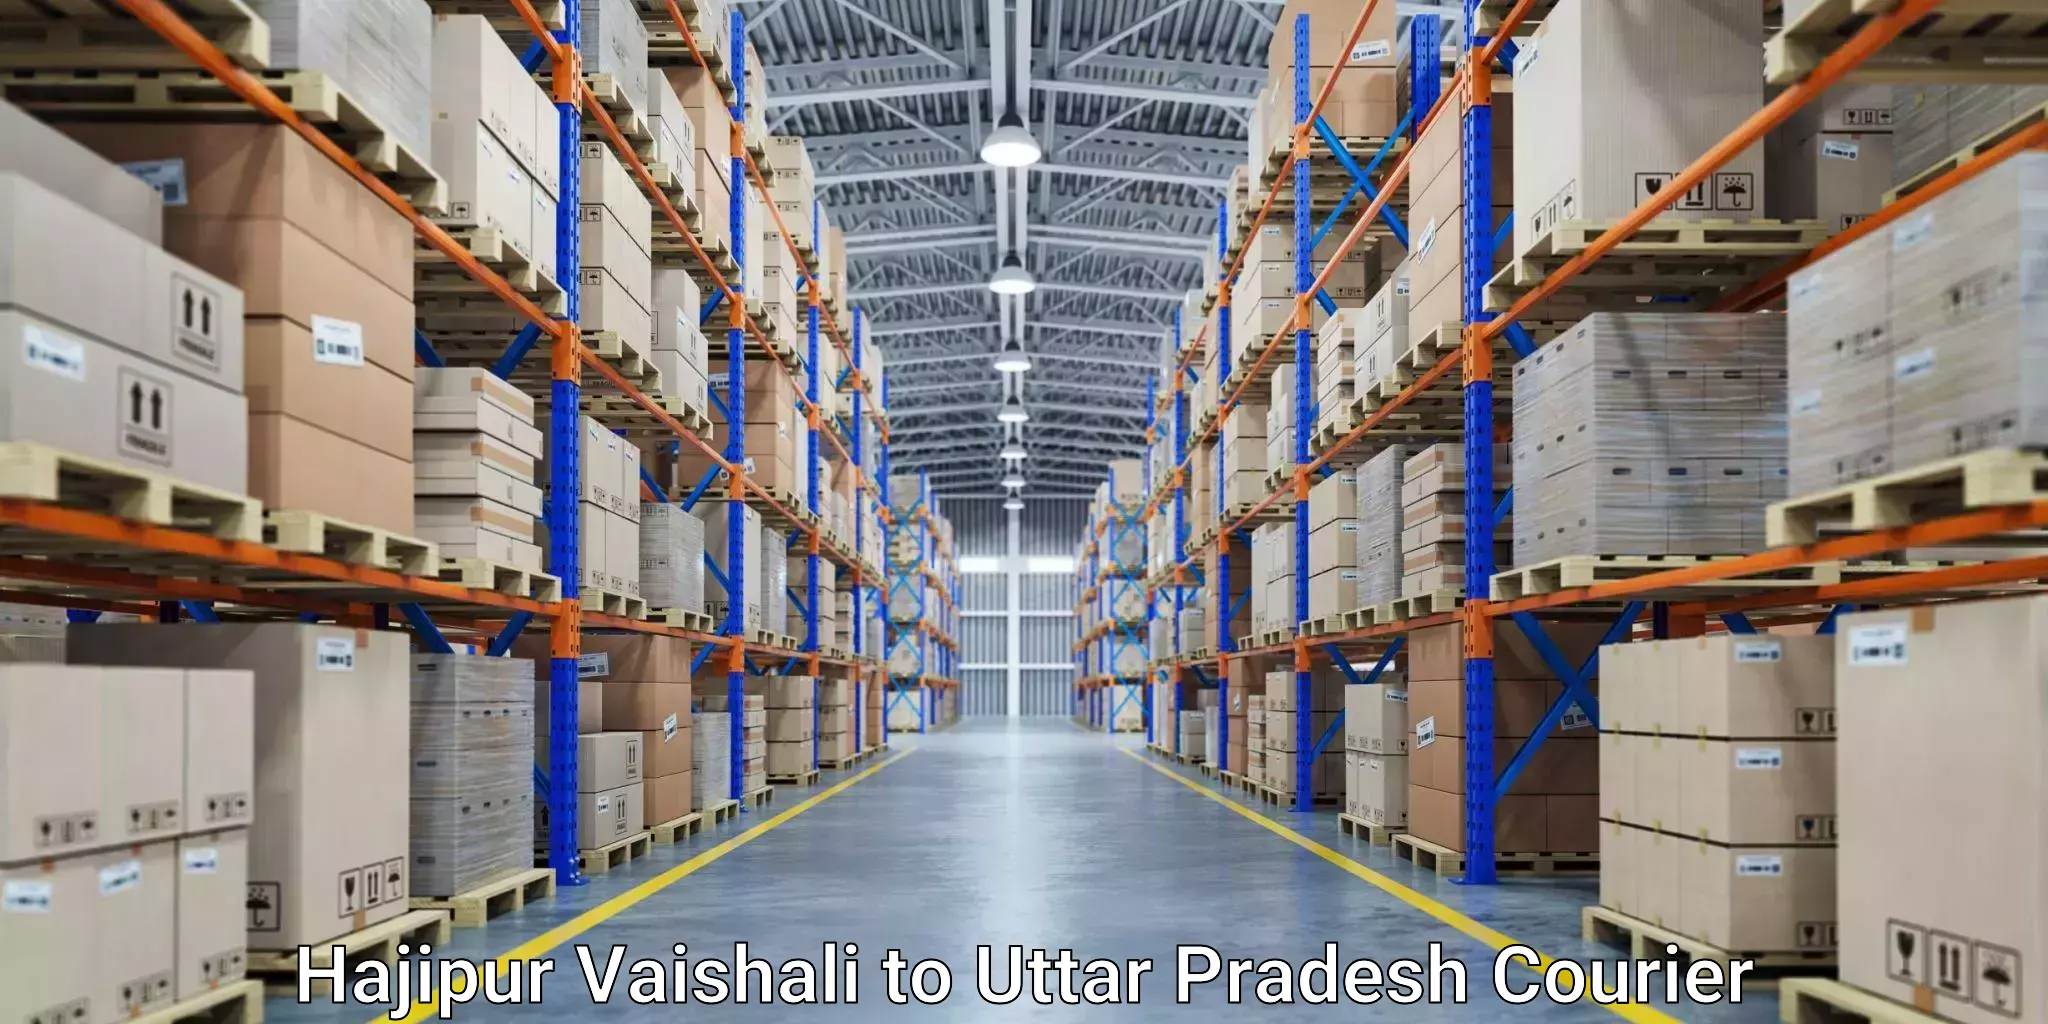 Courier service comparison Hajipur Vaishali to Khatauli